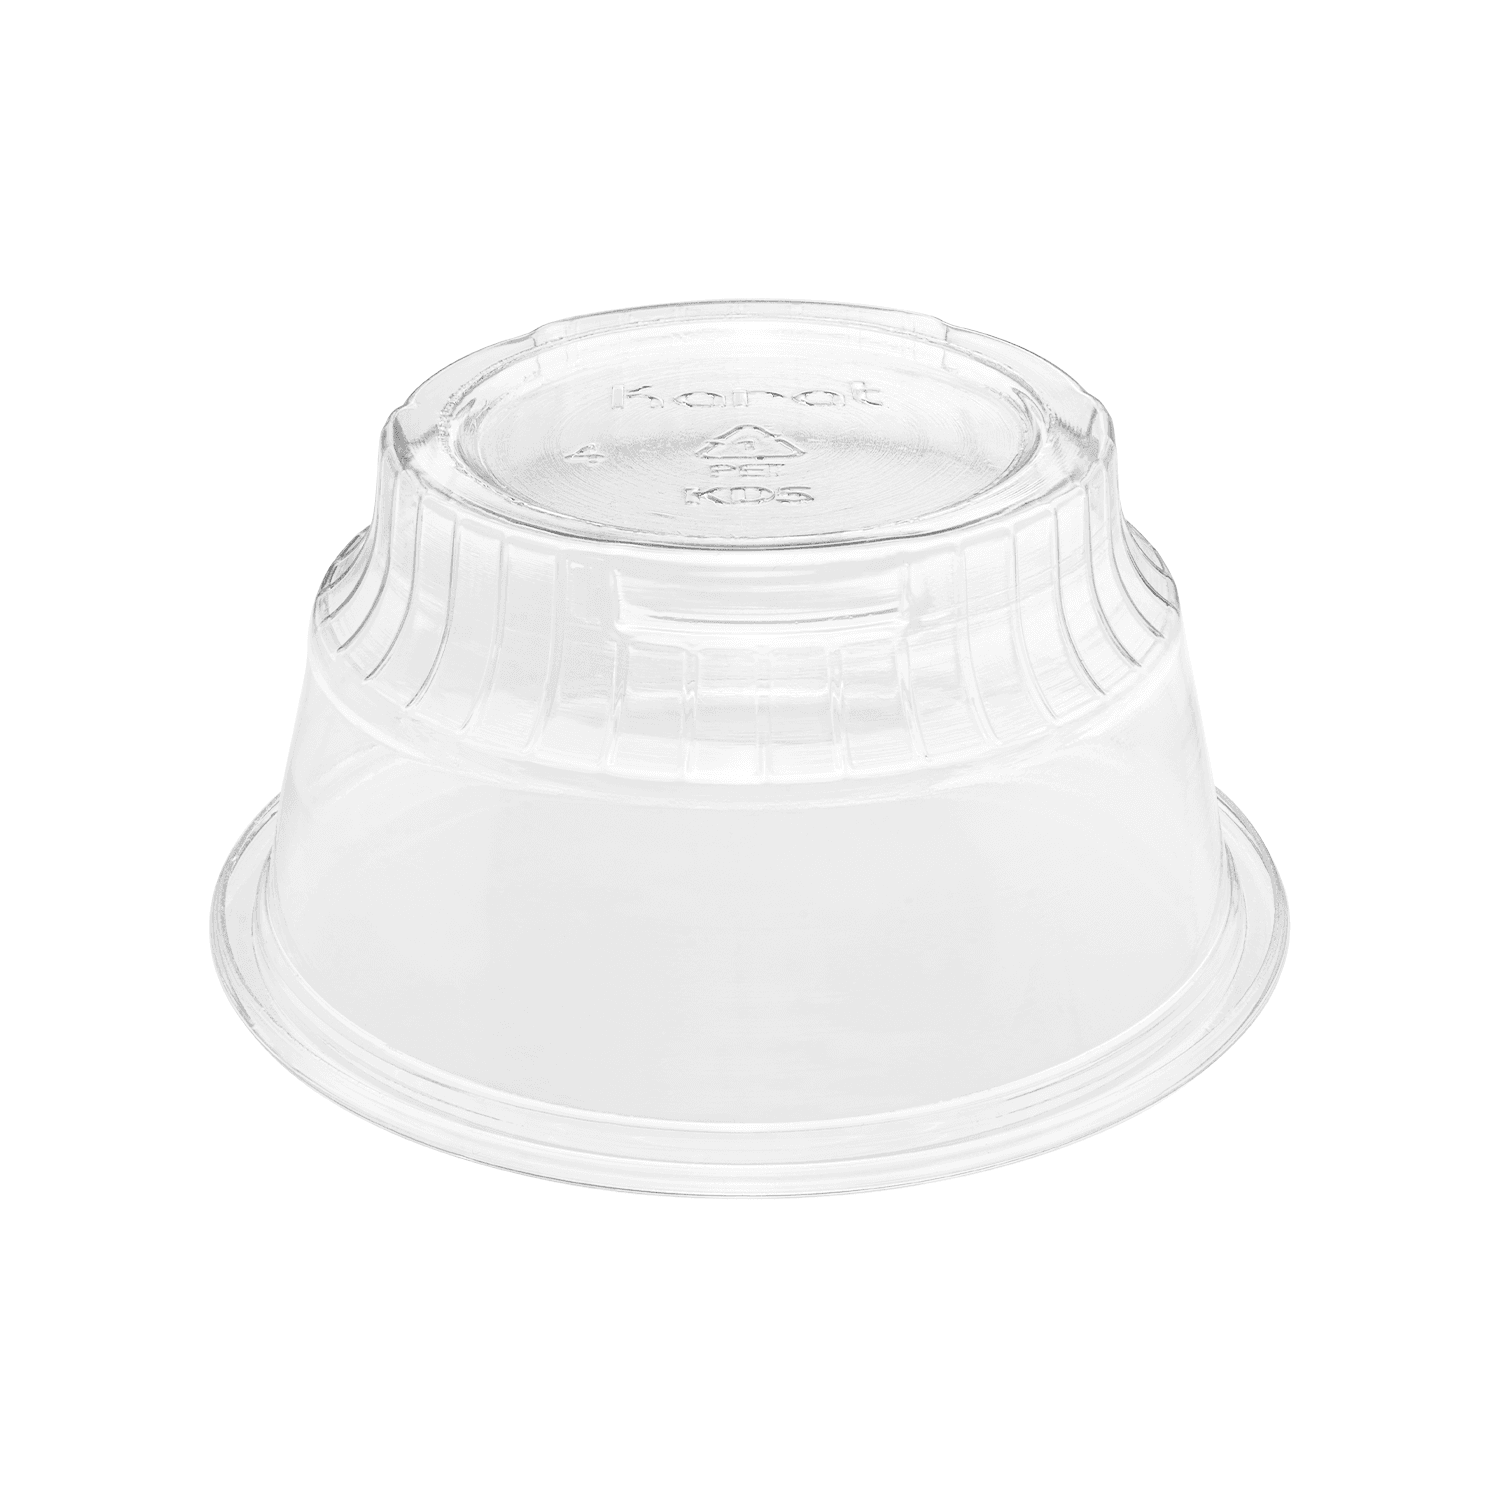 Clear Karat 5oz PET Plastic Dessert Cups upside down